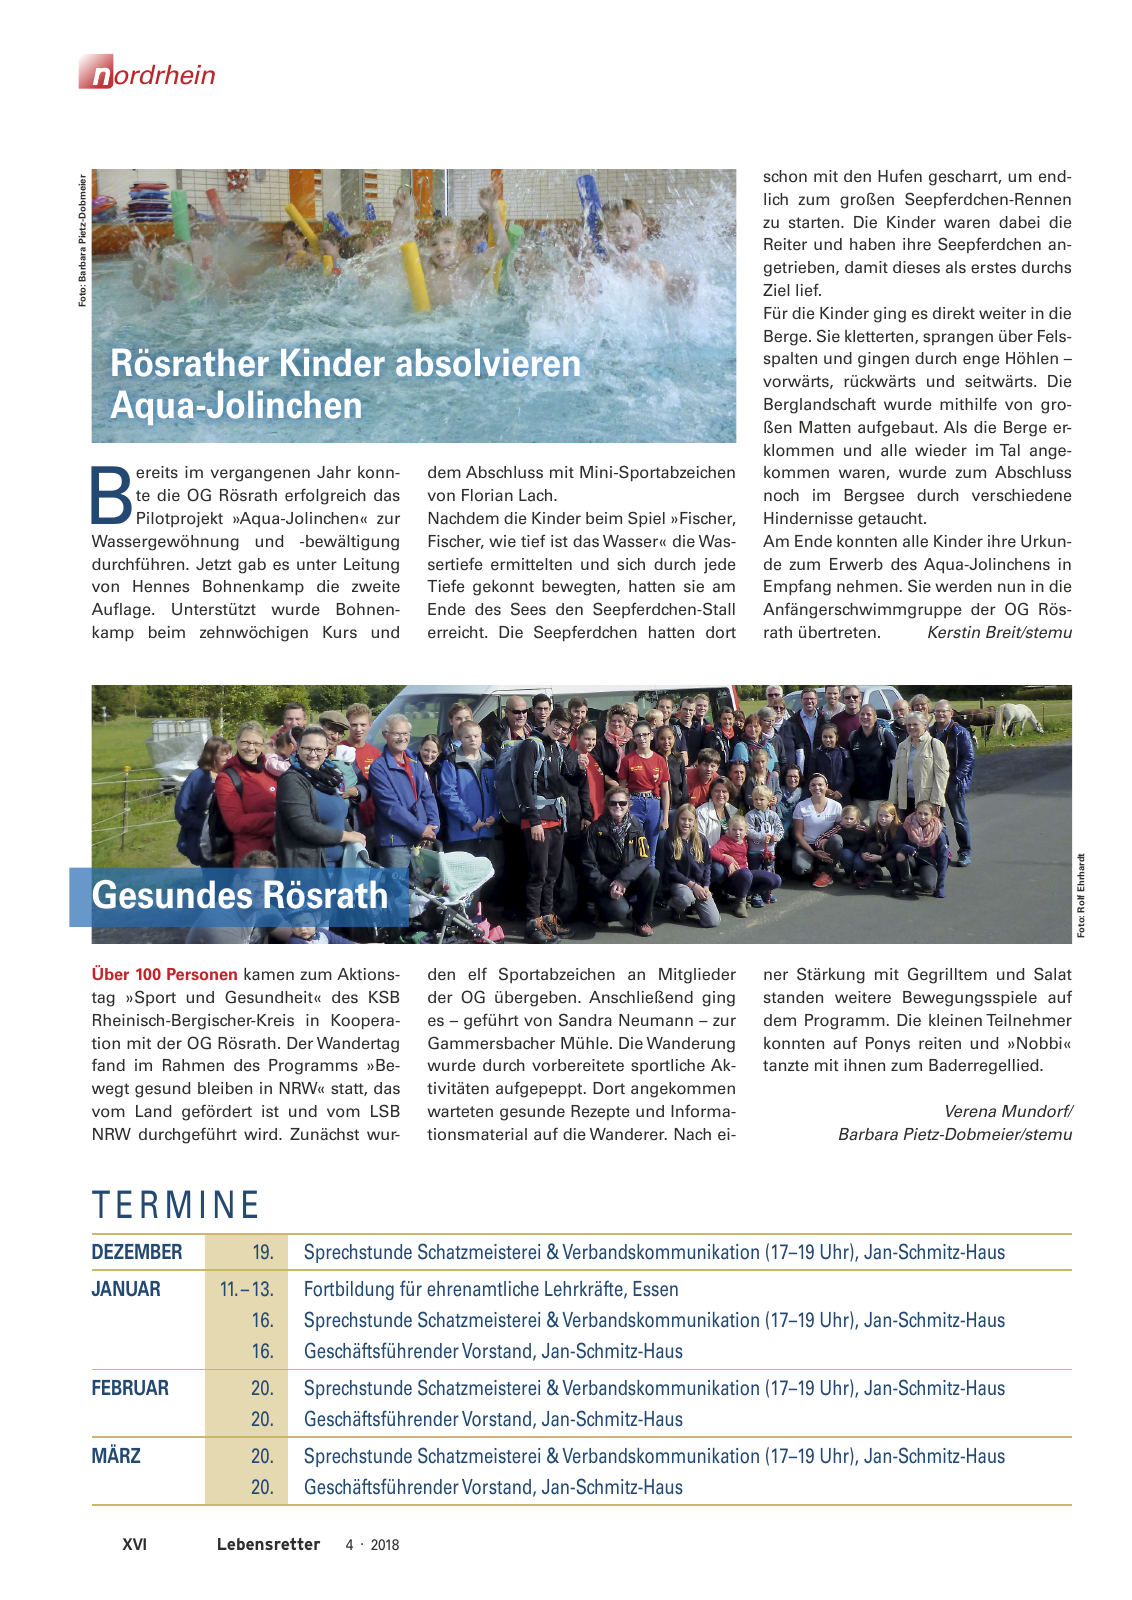 Vorschau Lebensretter 4/2018 - Regionalausgabe Nordrhein Seite 18